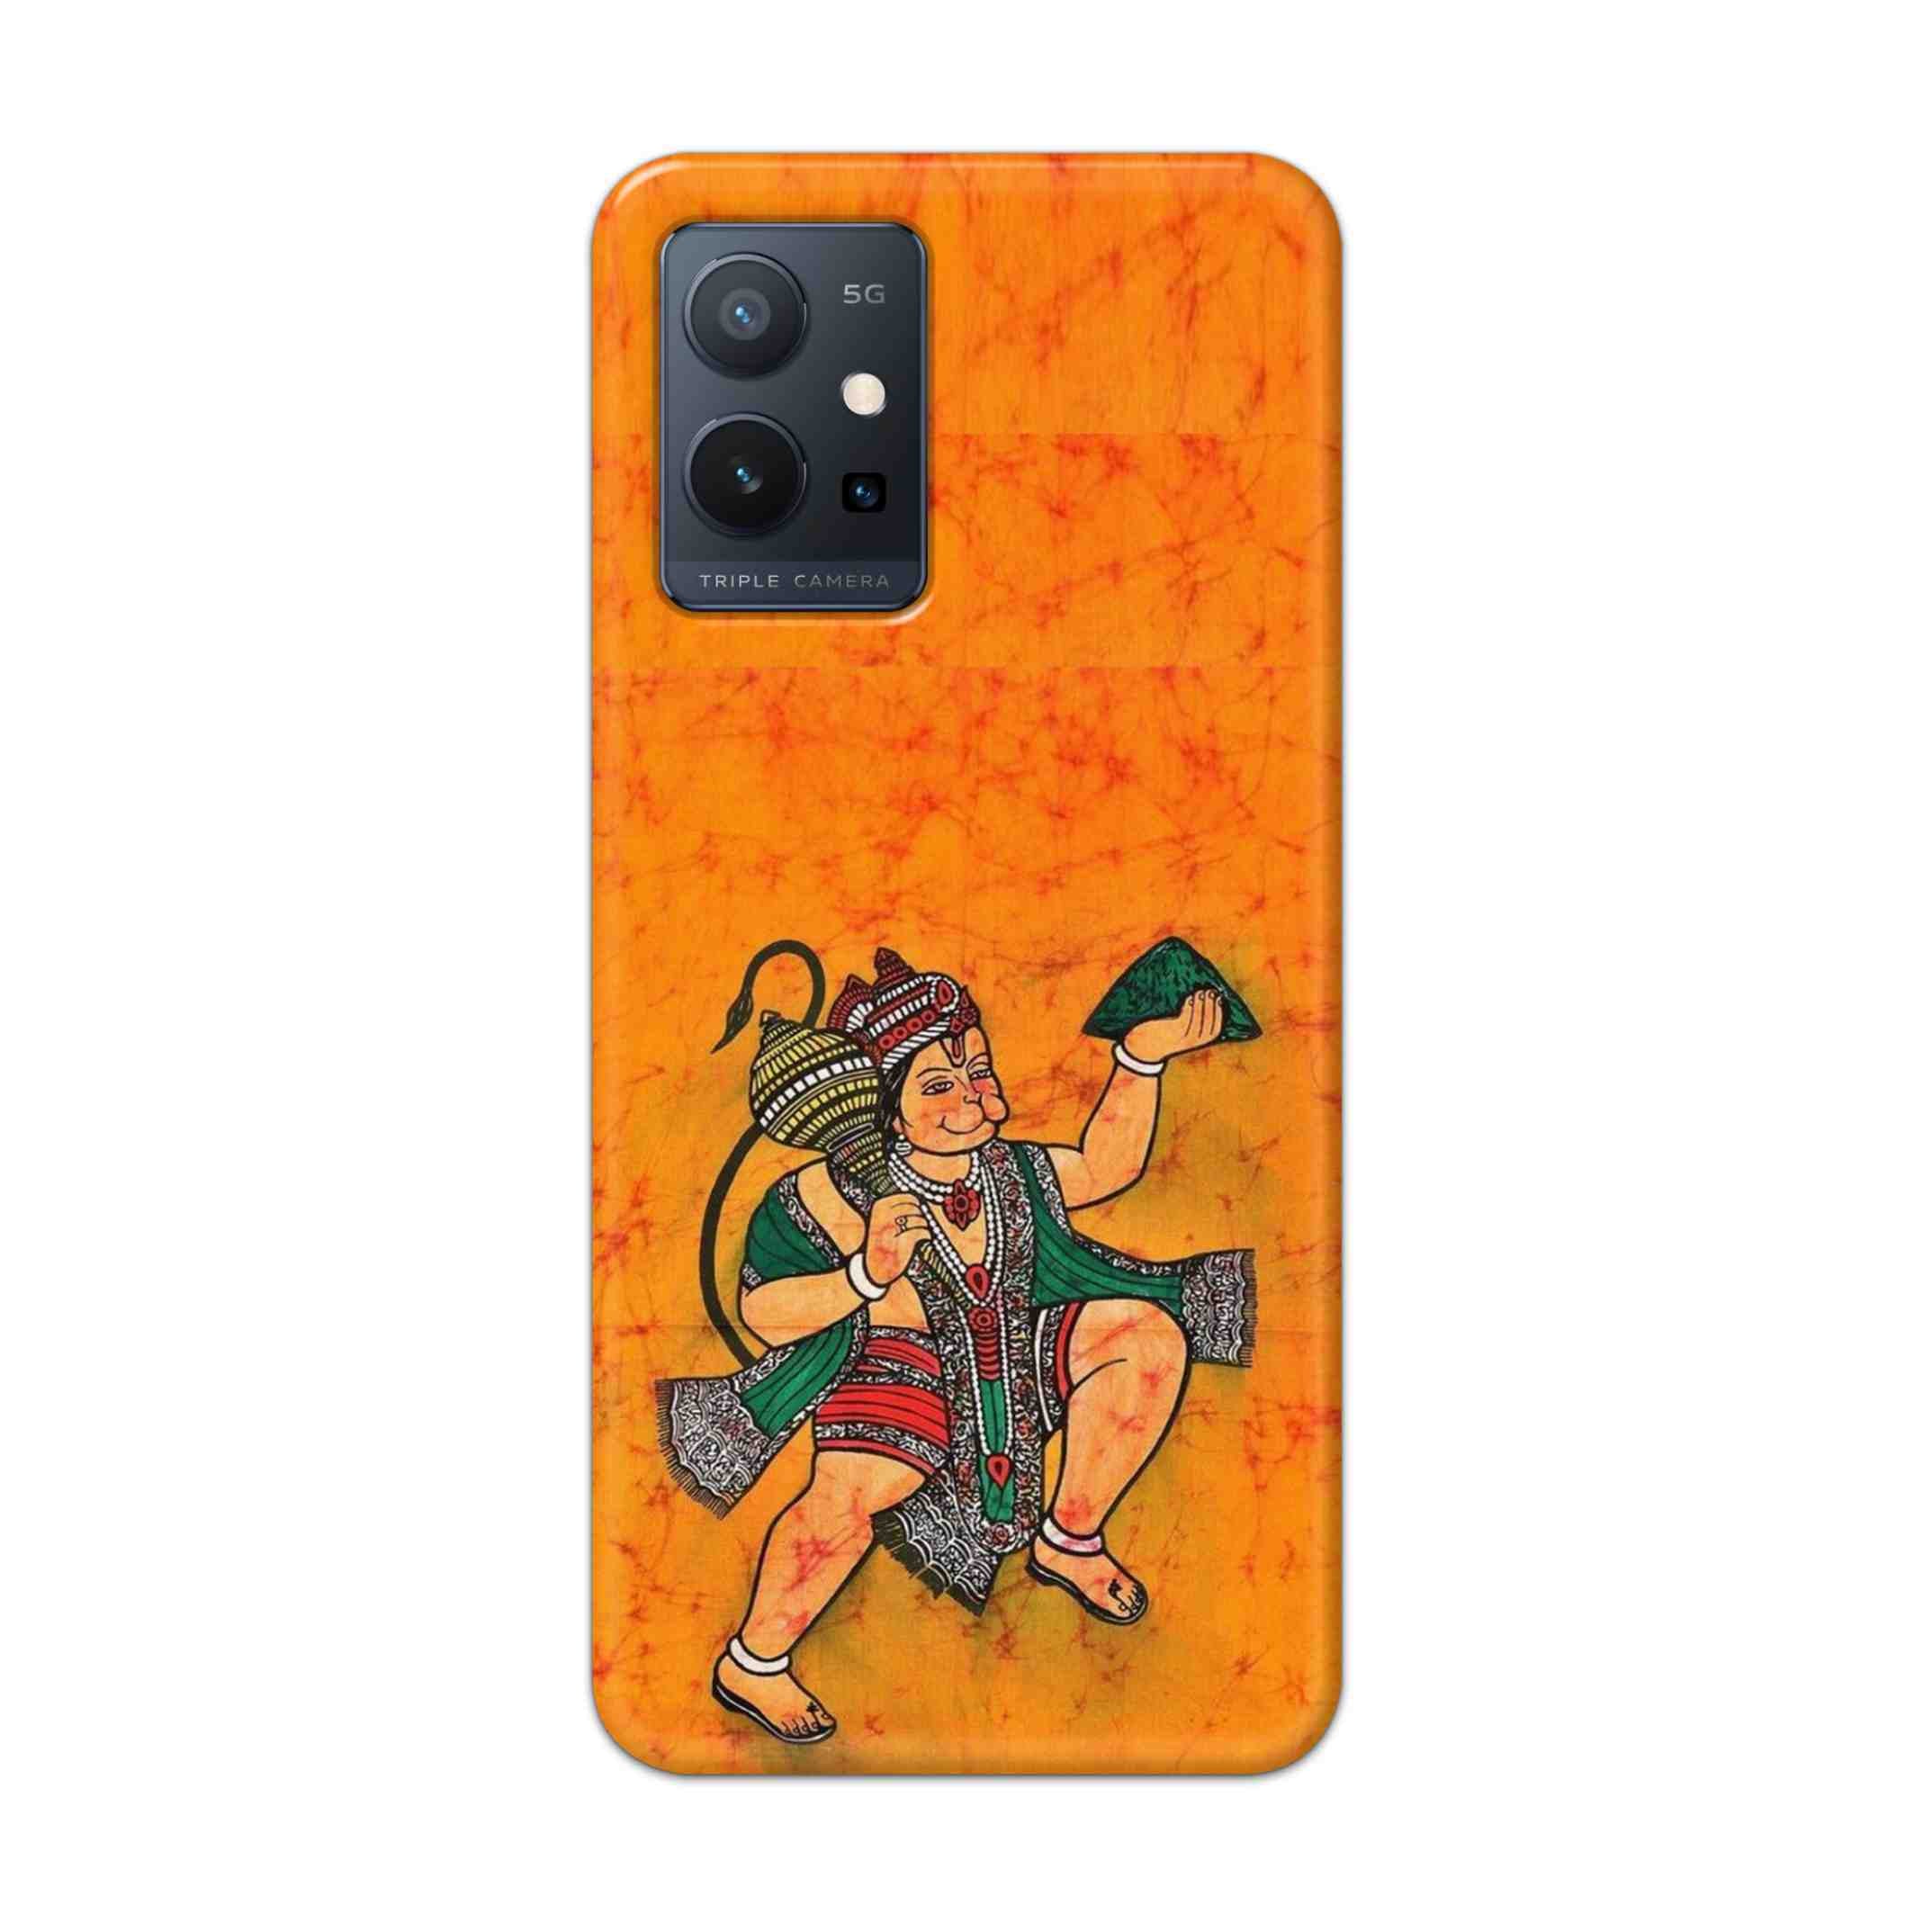 Buy Hanuman Ji Hard Back Mobile Phone Case Cover For Vivo T1 5G Online